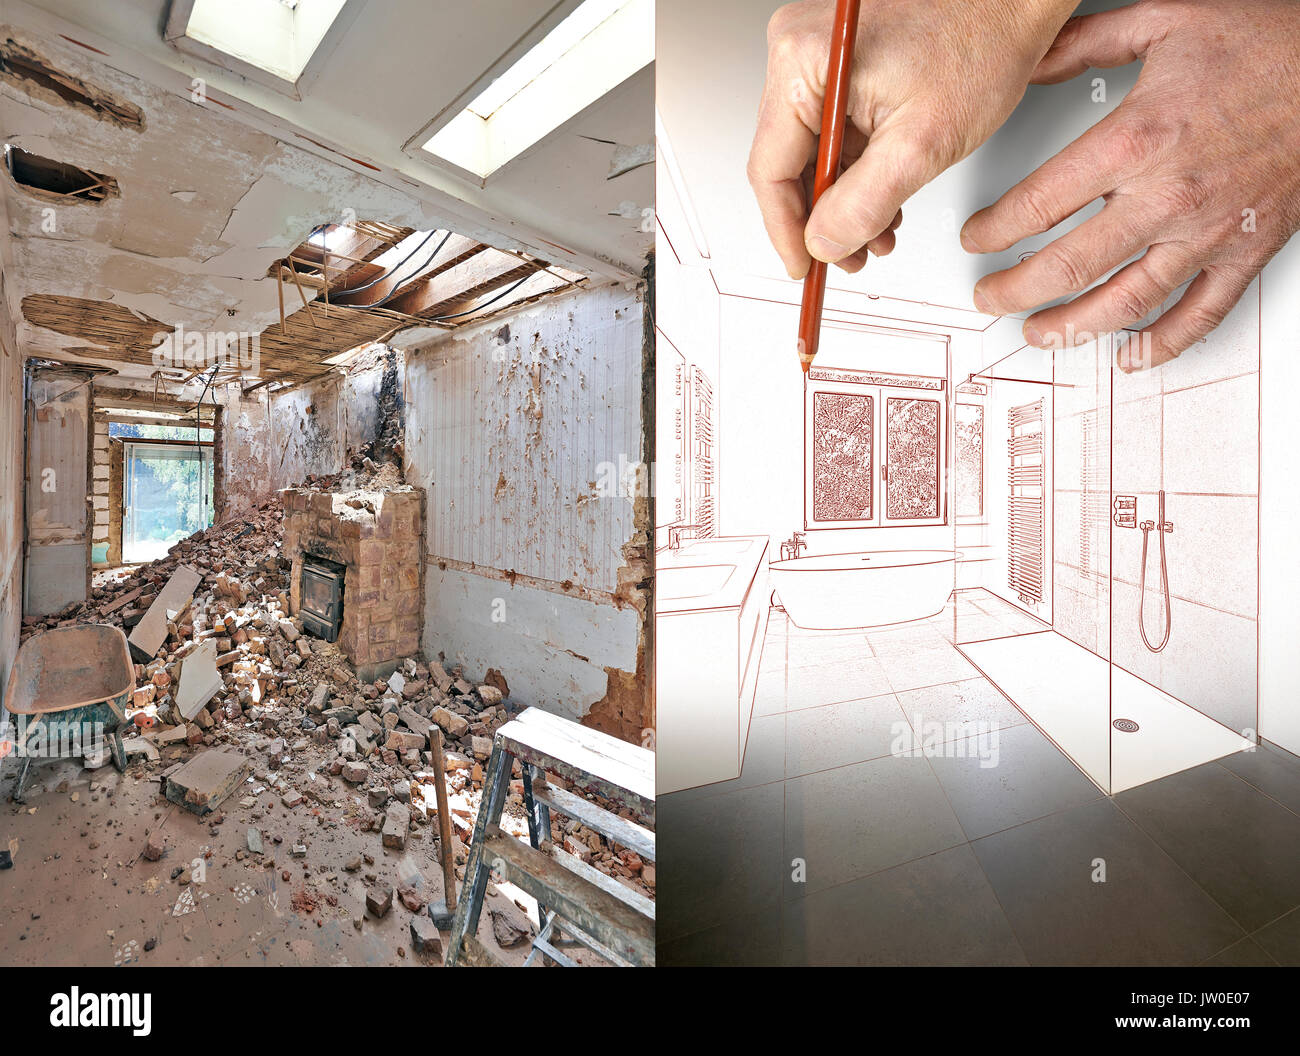 Dimensions et planifié la rénovation d'une salle de bains avant et après Banque D'Images